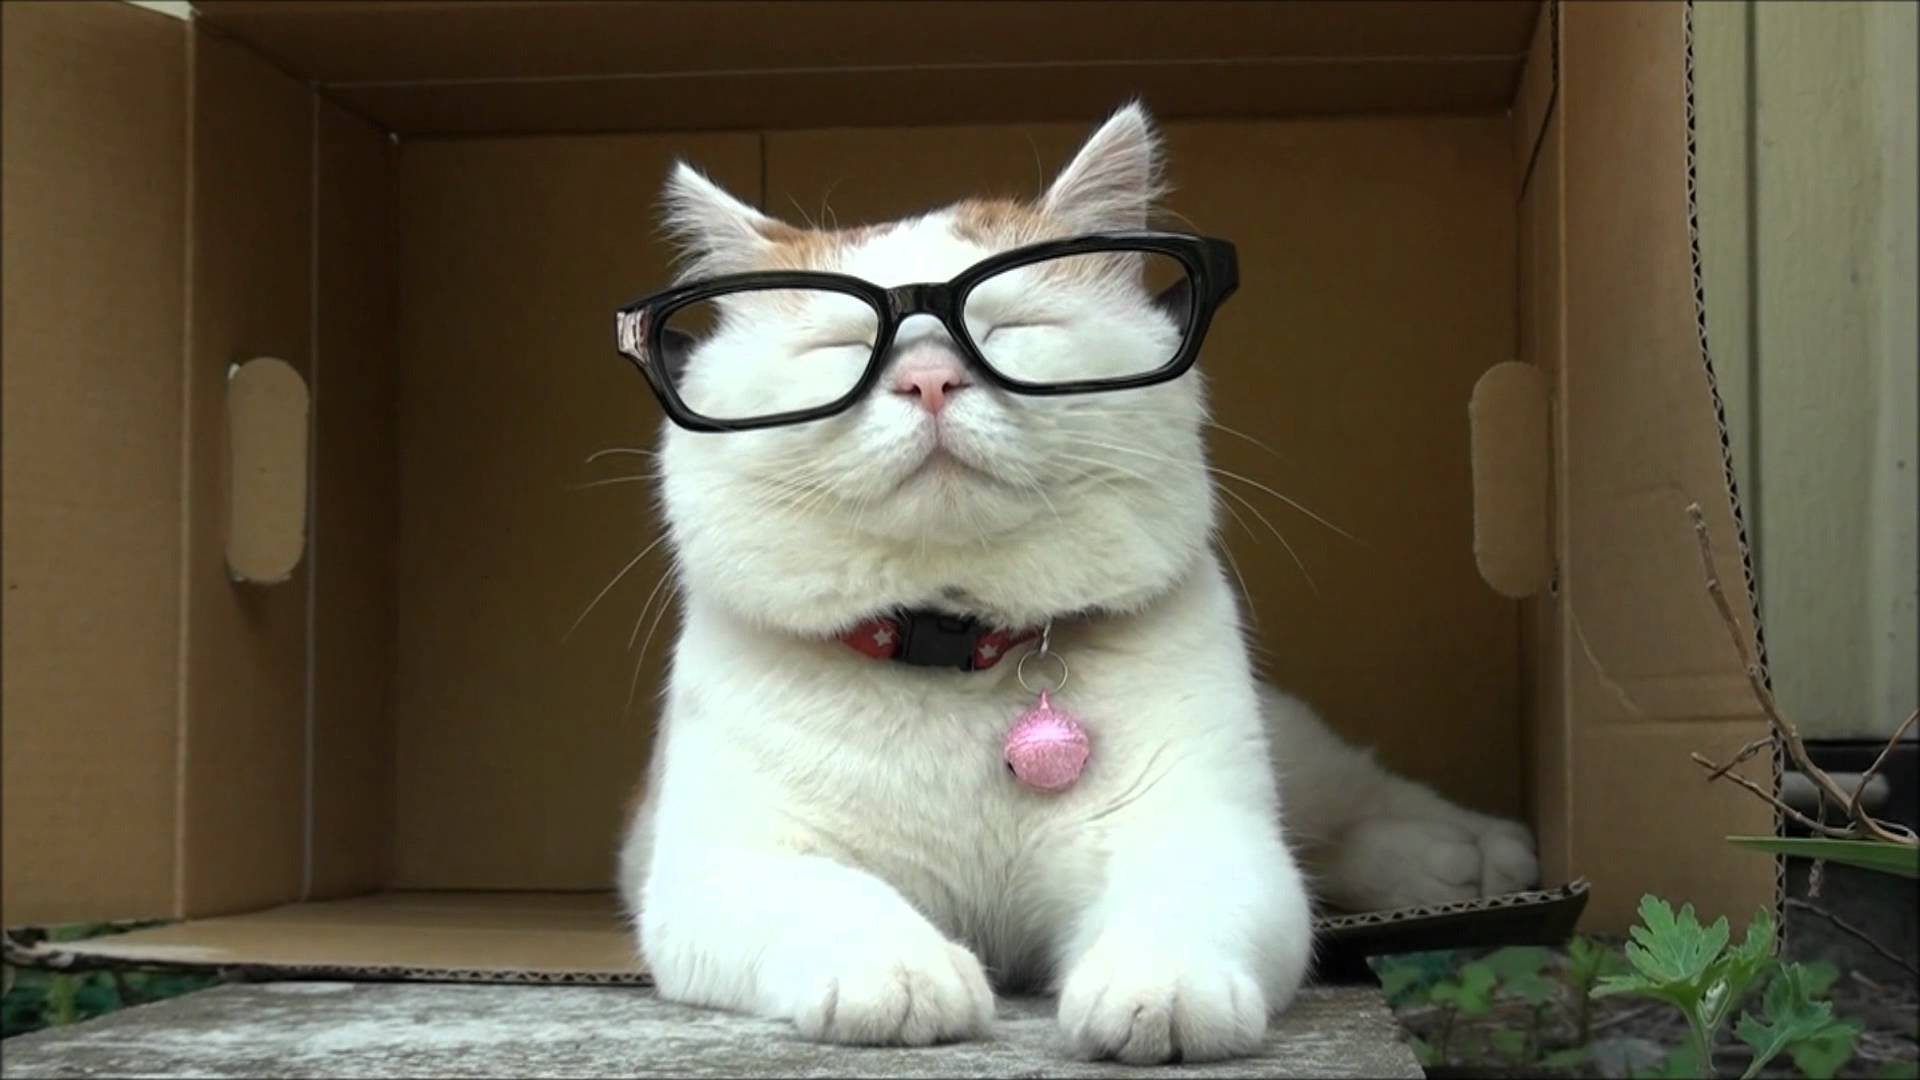 [48+] Cat Wearing Glasses Wallpaper | WallpaperSafari.com